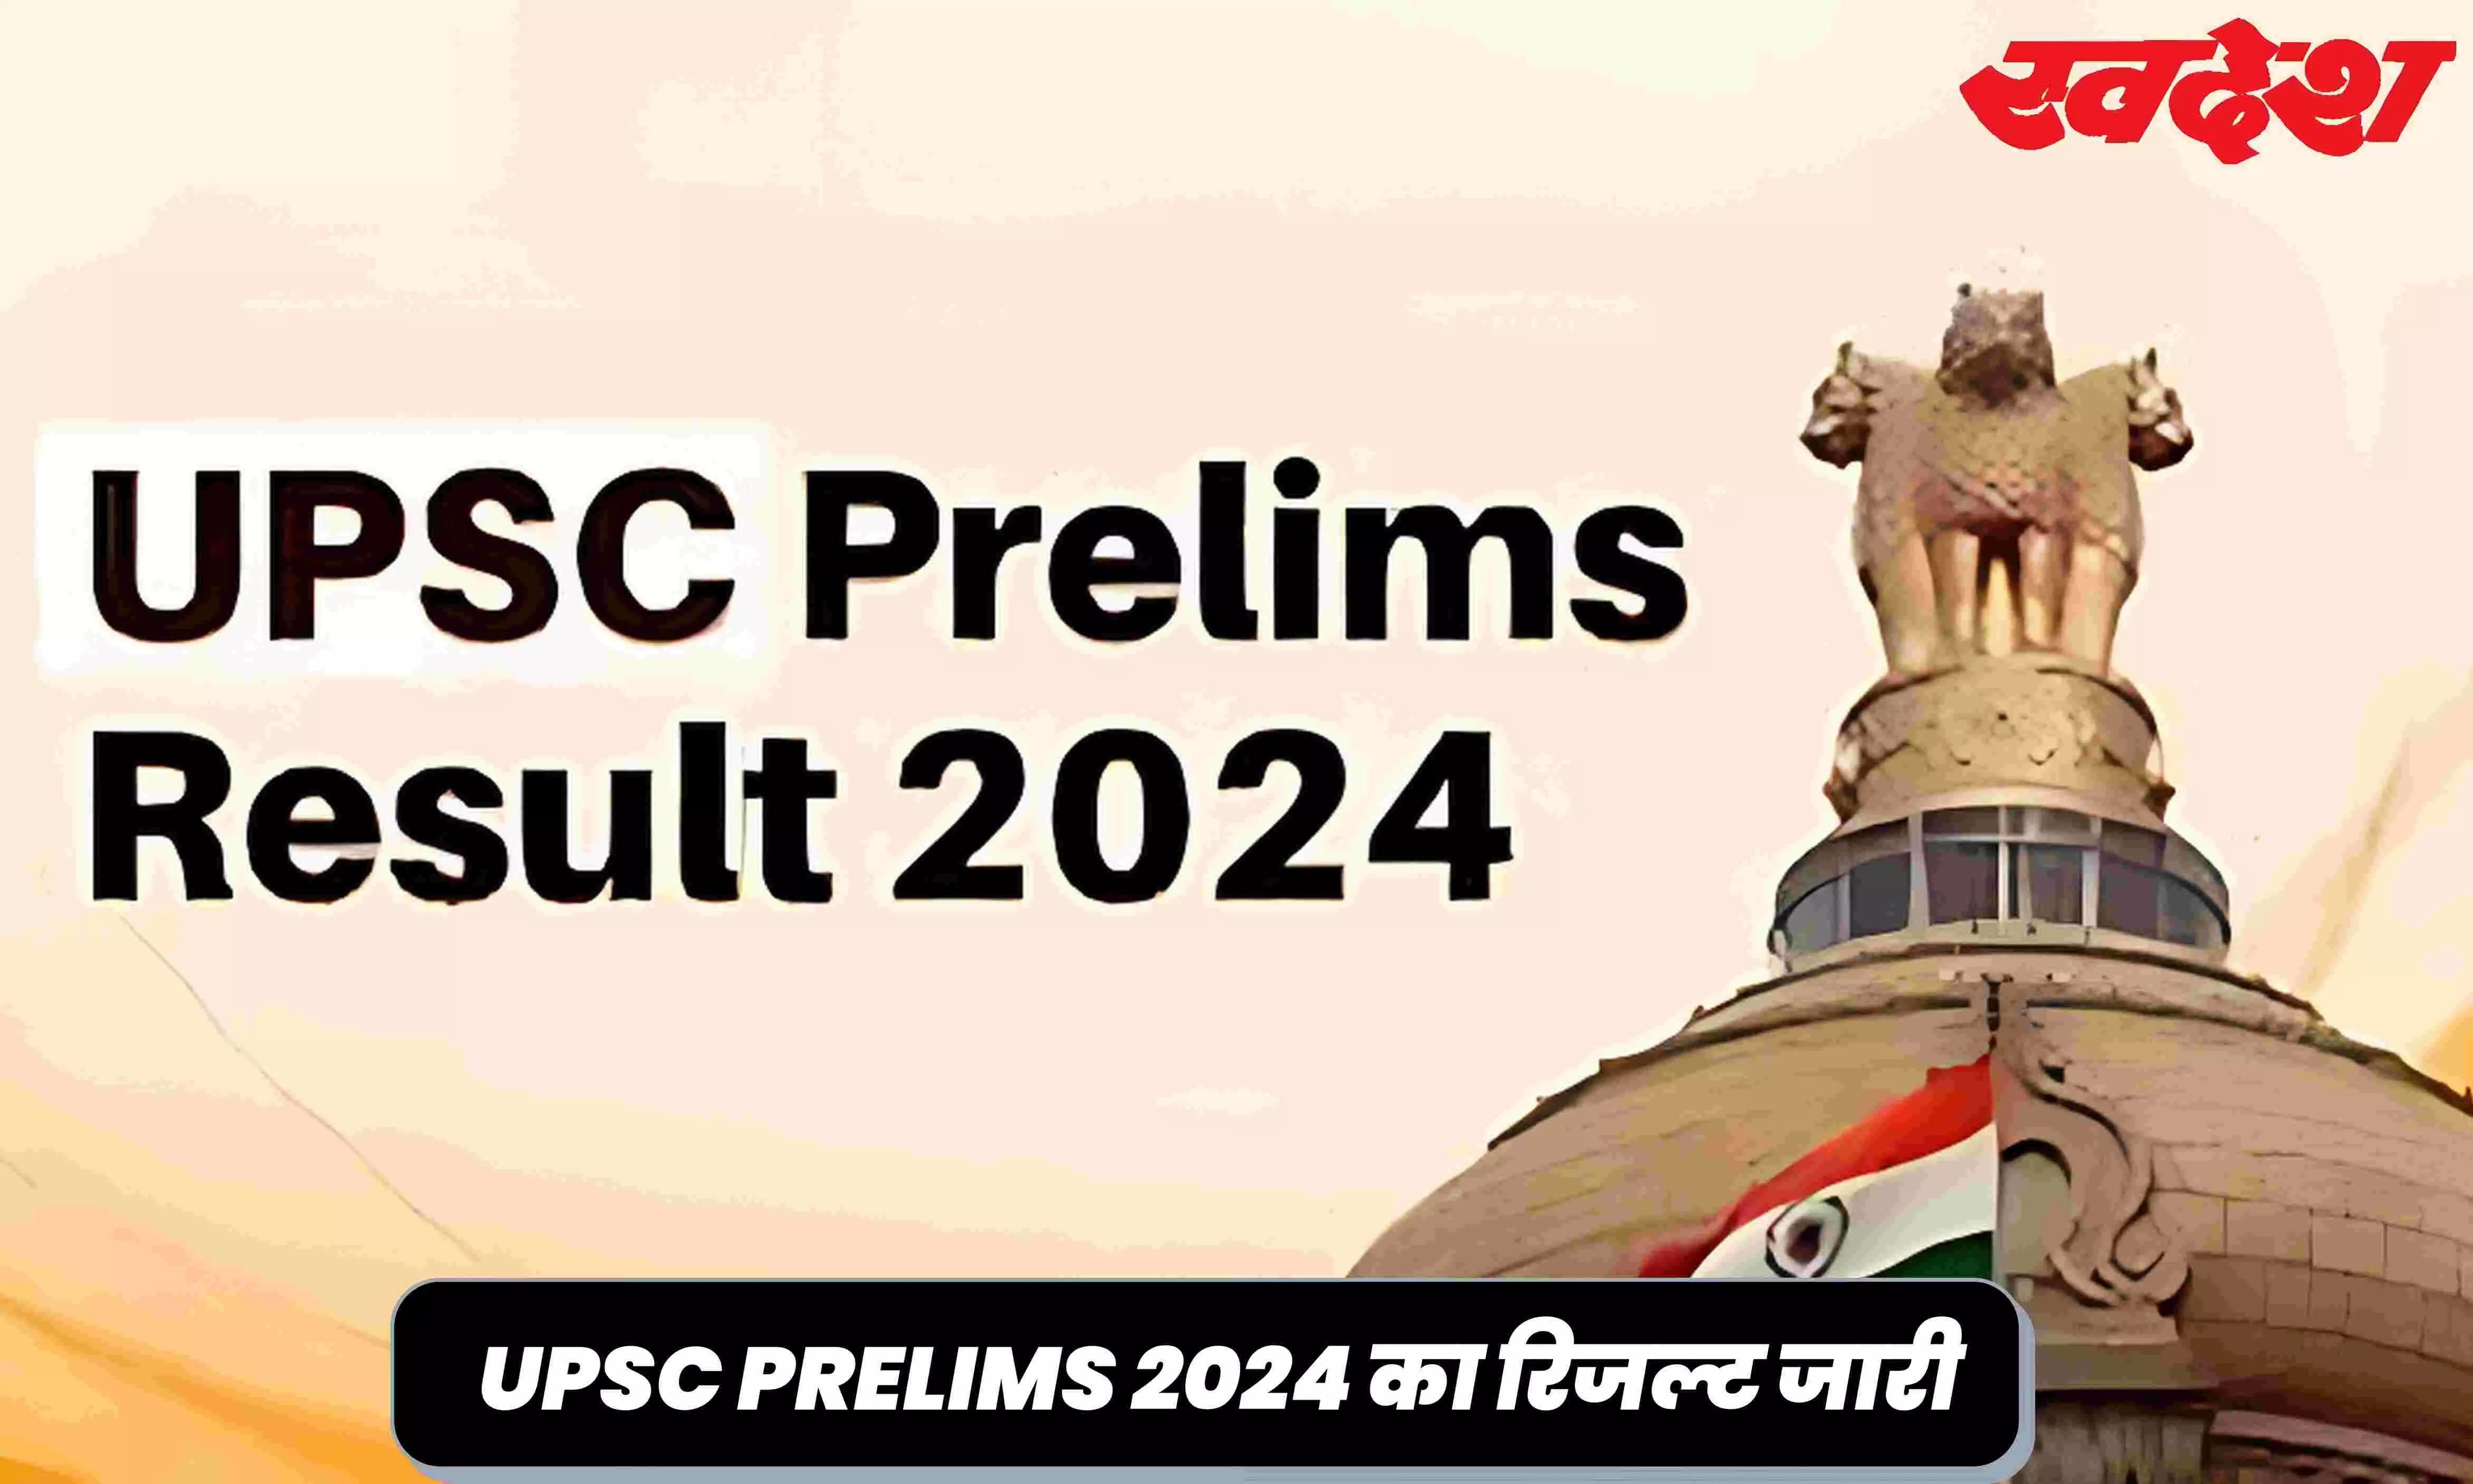 UPSC Prelims Result 2024 Out: इंतजार हुआ खत्म, जारी हुआ यूपीएससी परीक्षा का परिणाम, फटाफट करें चेक